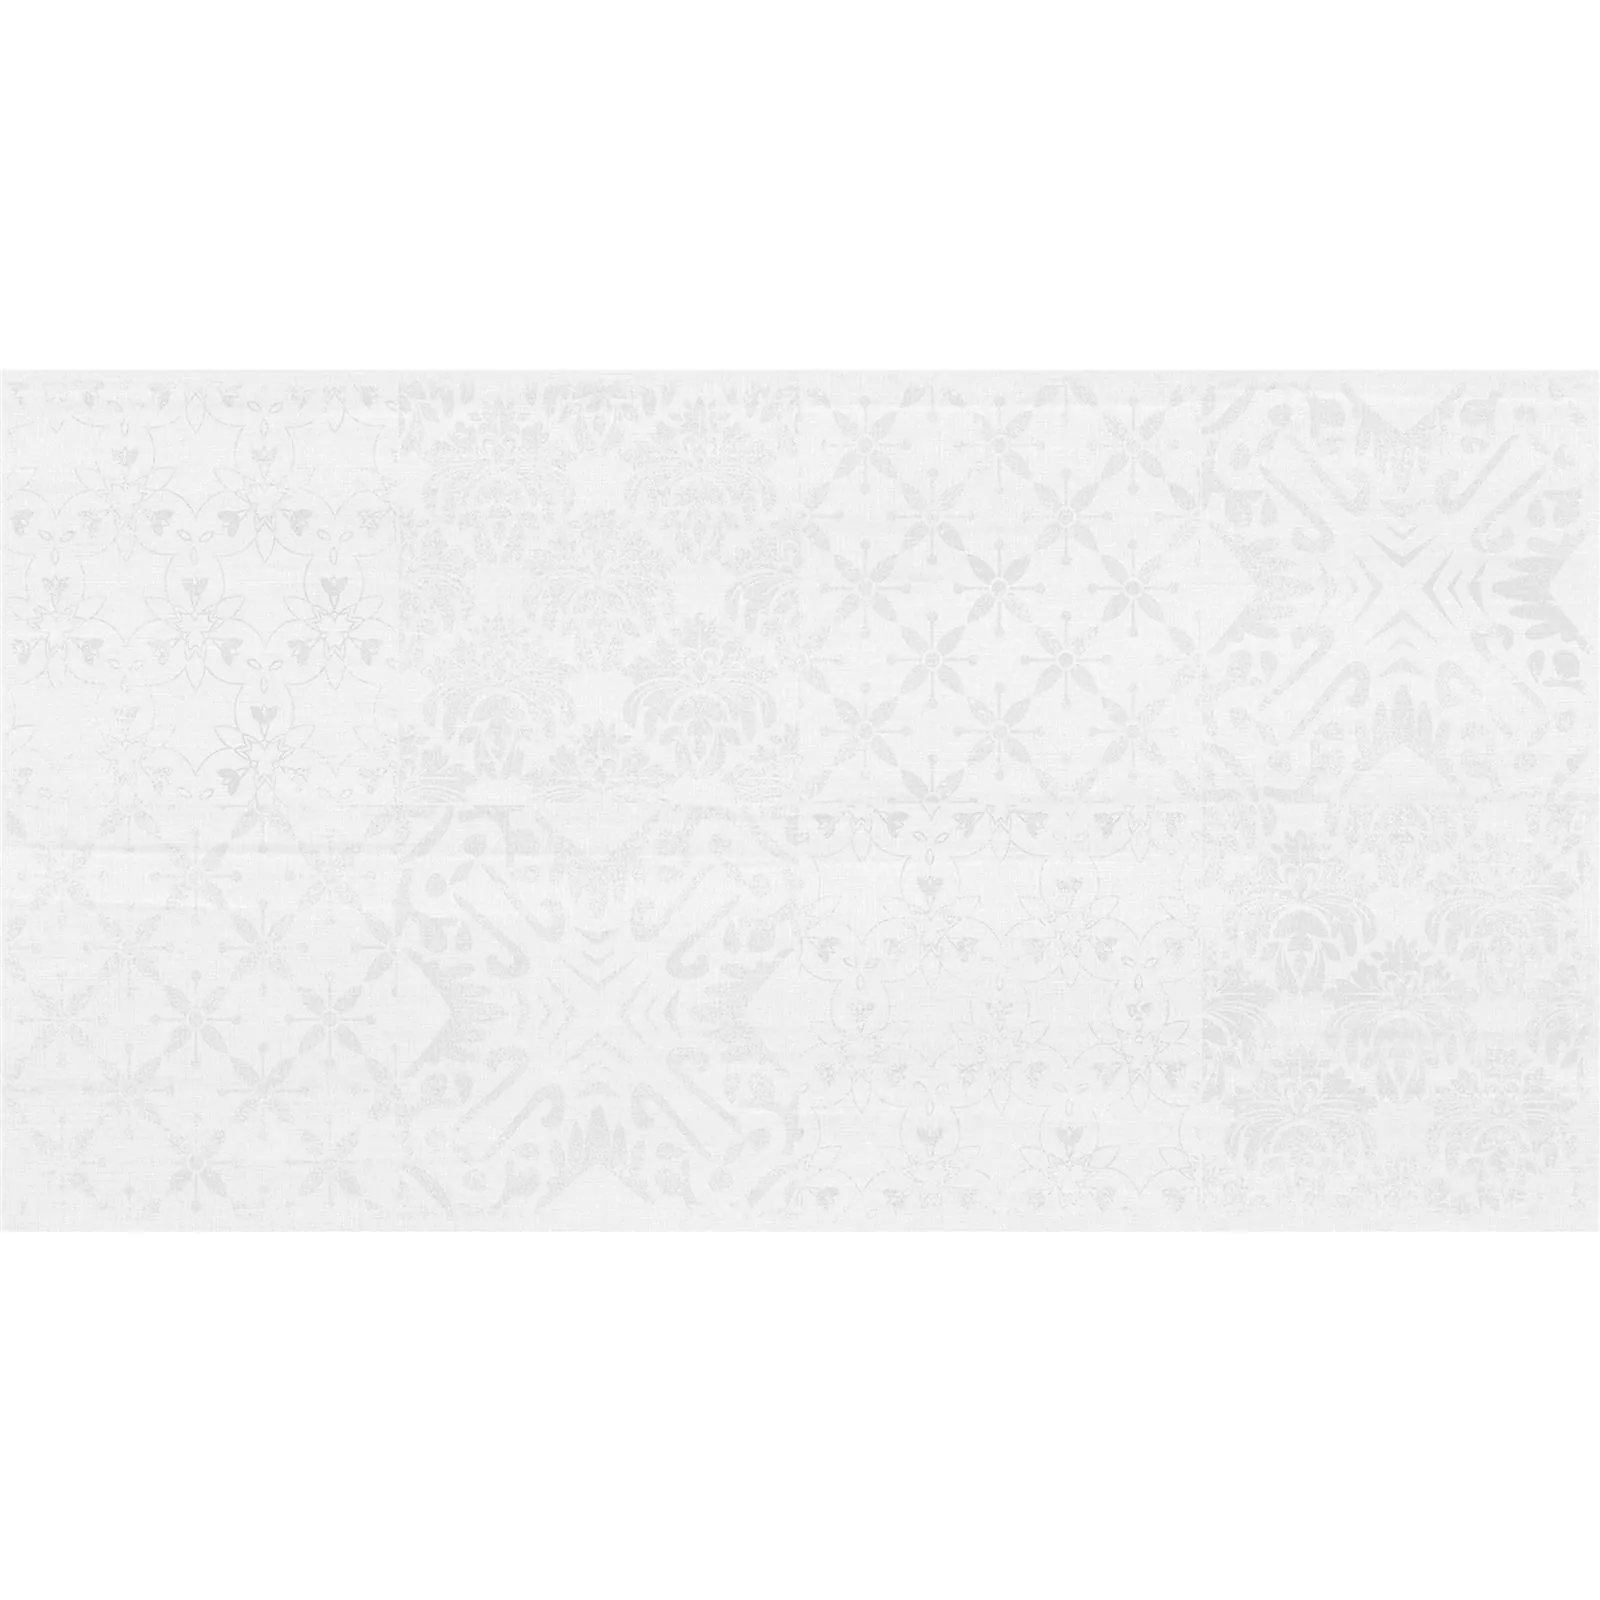 Sample Wall Tiles Abramson 30x60cm Mat White Decor